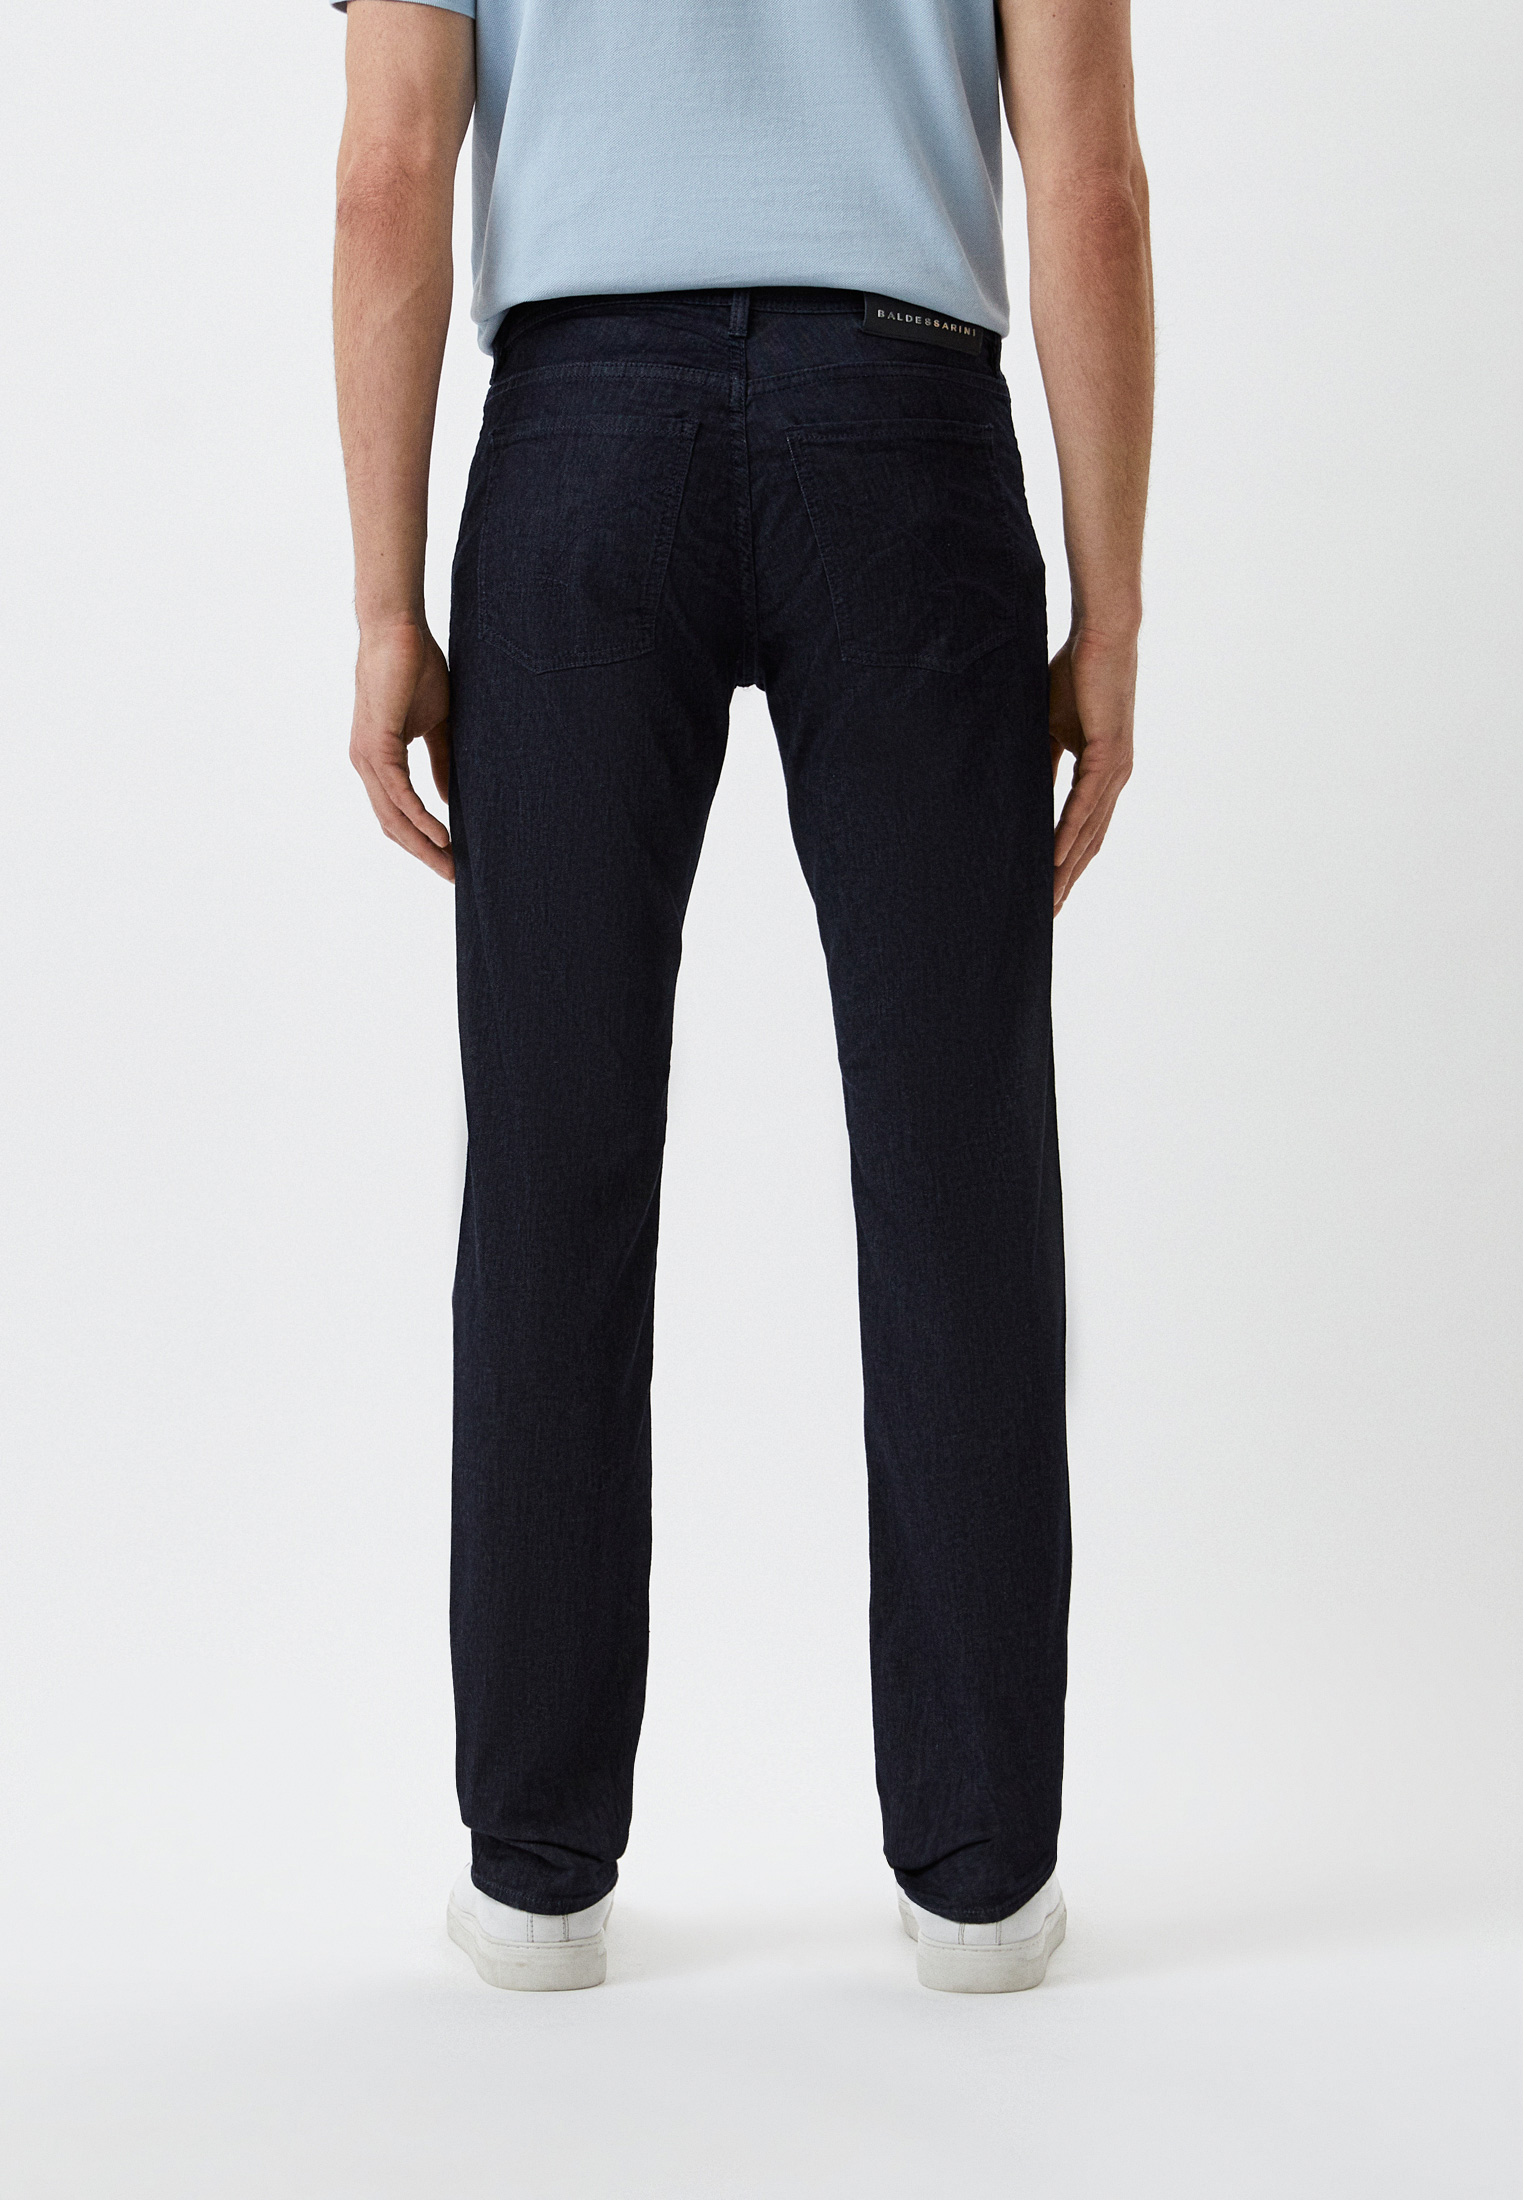 Мужские прямые джинсы BALDESSARINI (Балдессарини) B1 16502.1439: изображение 3